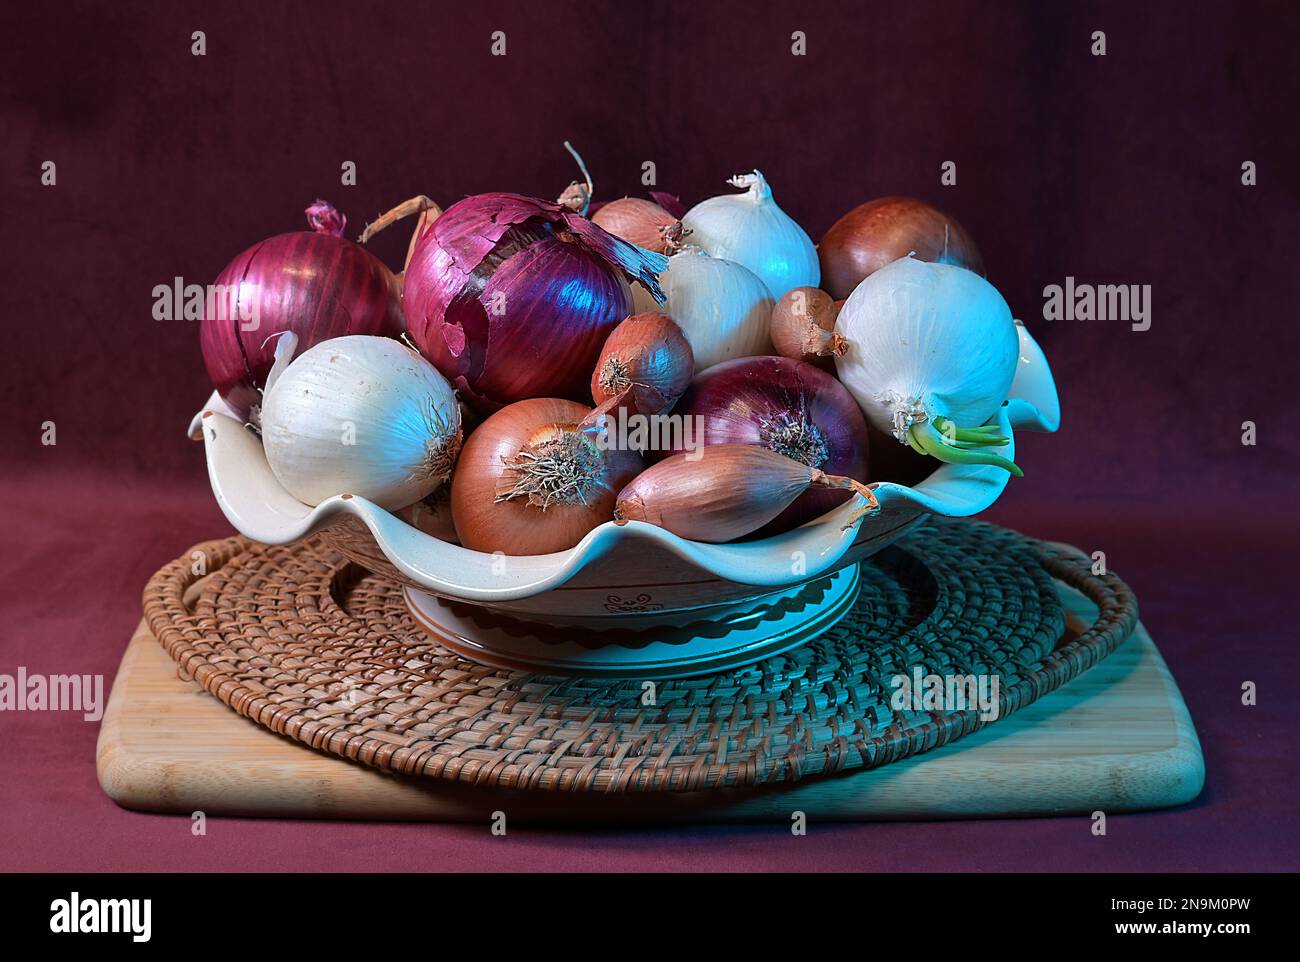 Zusammensetzung von roten, weißen und goldenen Zwiebeln, Schalotten. Fotografiert in künstlichem Licht. Stockfoto